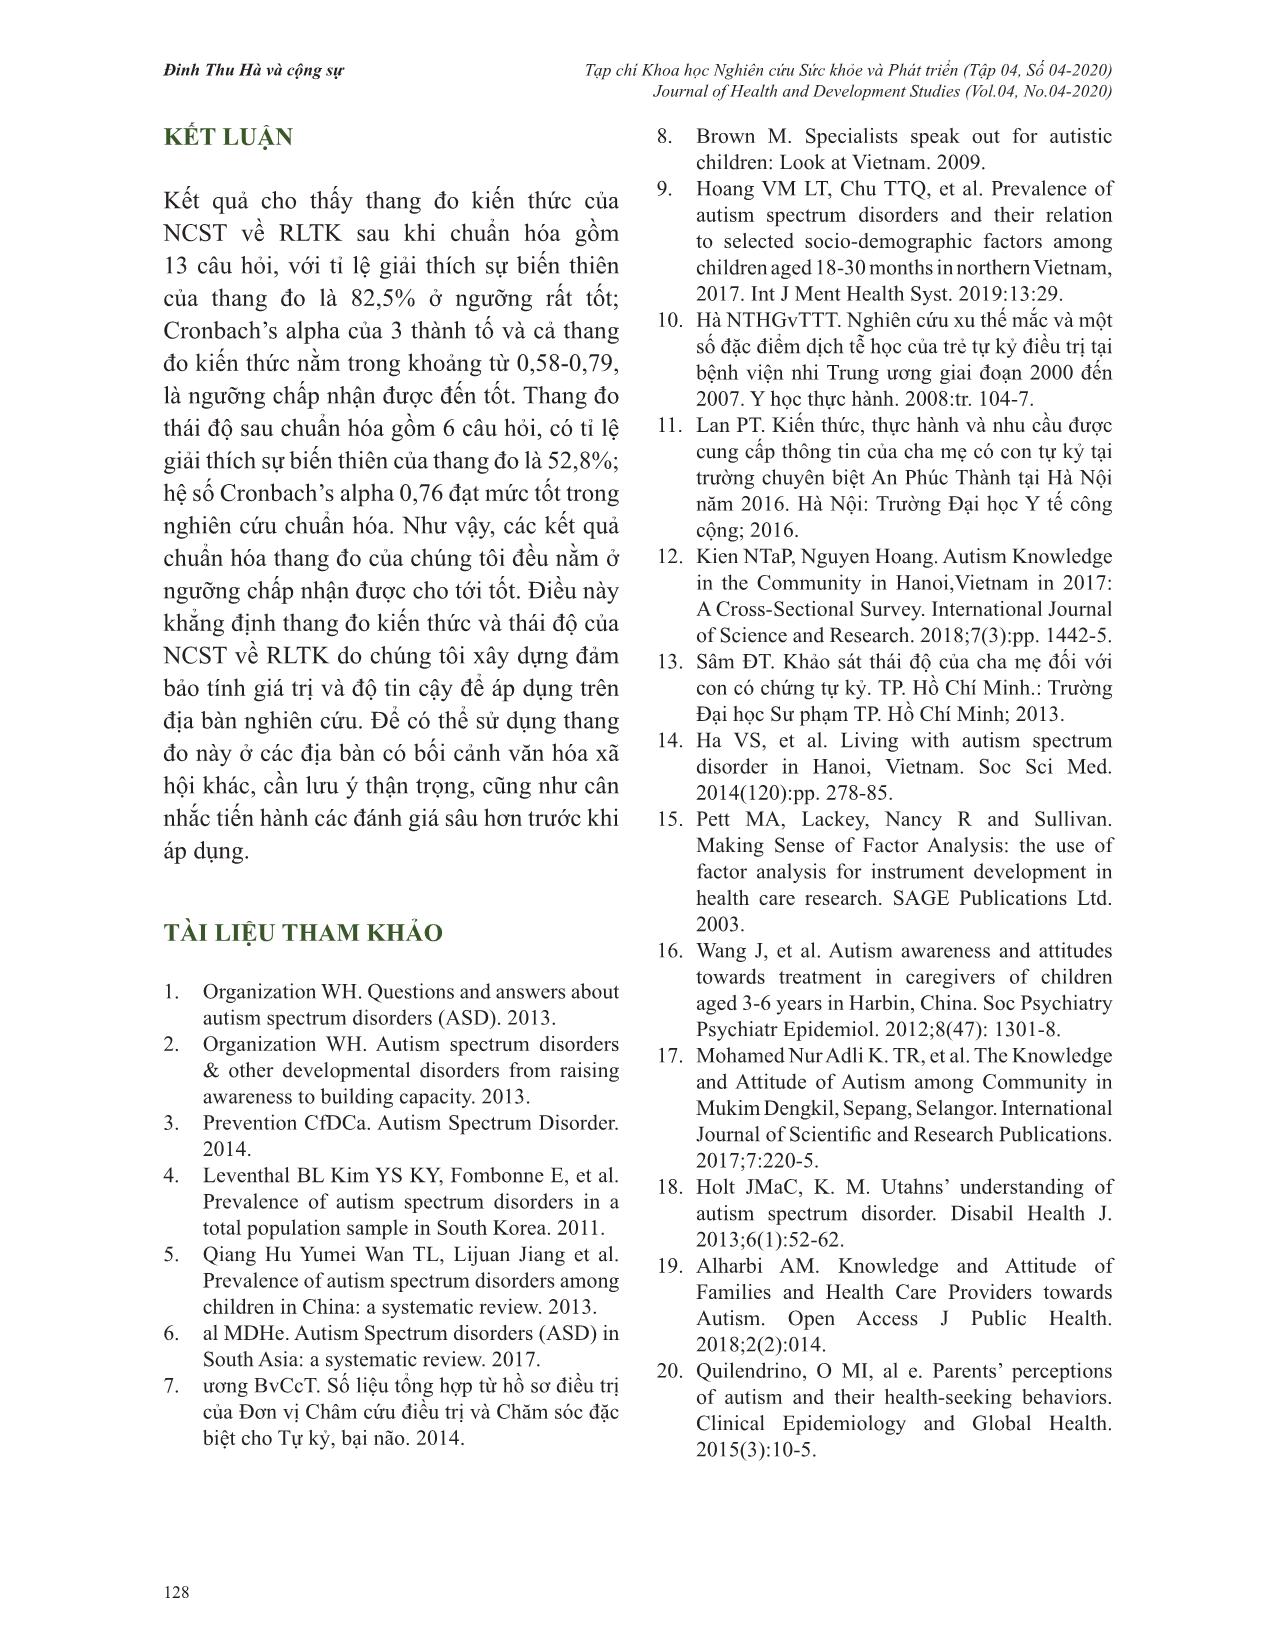 Tính giá trị và độ tin cậy của thang đo kiến thức, thái độ về rối loạn tự kỷ của người chăm sóc trẻ tại hai tỉnh Hòa Bình và Thái Bình, Việt Nam trang 9